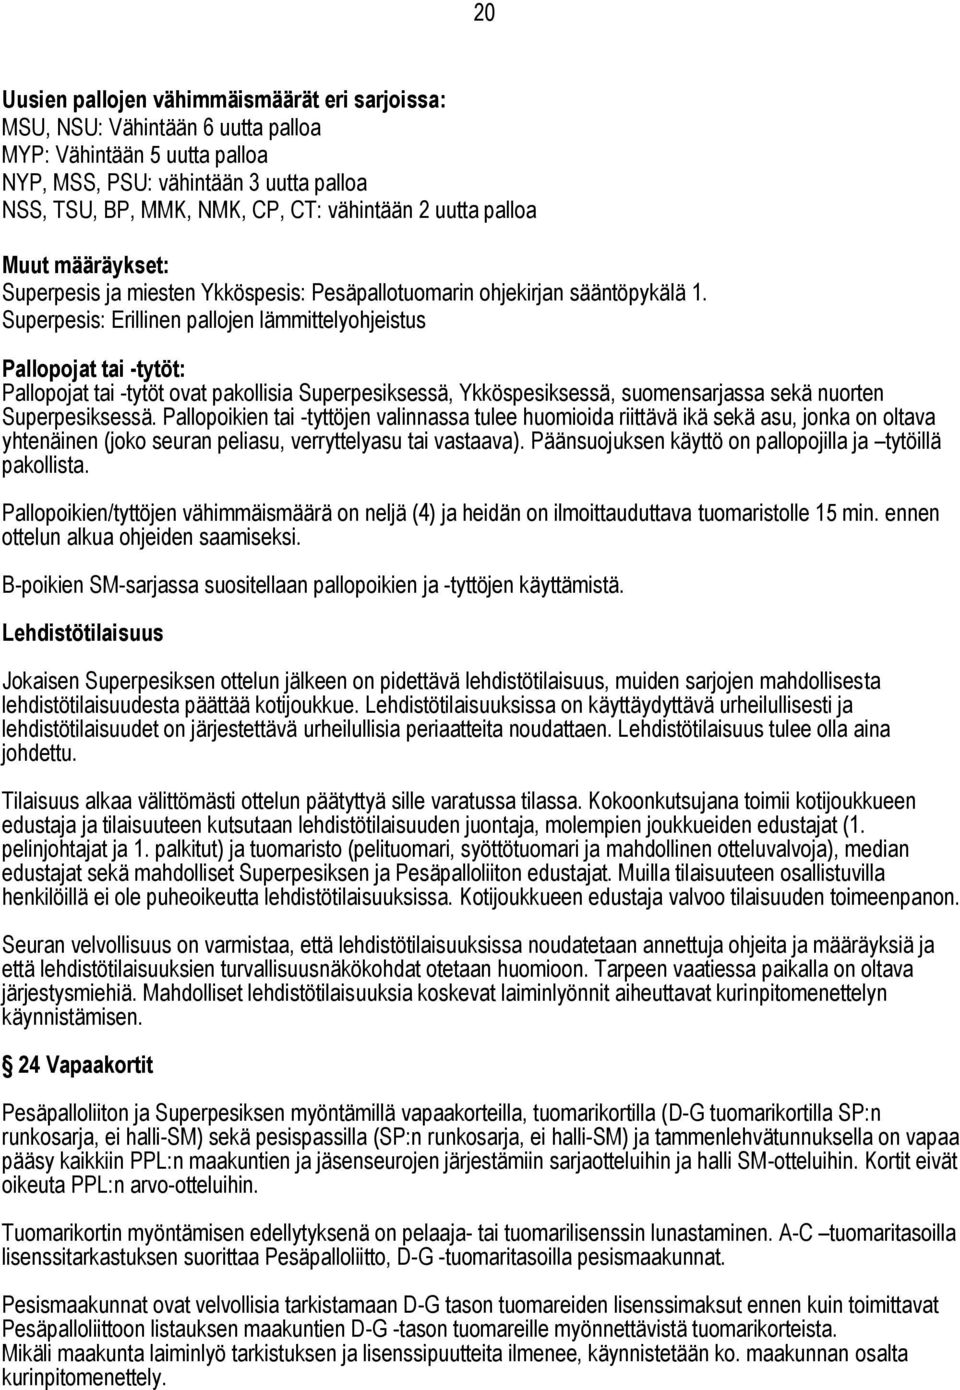 Superpesis: Erillinen pallojen lämmittelyohjeistus Pallopojat tai -tytöt: Pallopojat tai -tytöt ovat pakollisia Superpesiksessä, Ykköspesiksessä, suomensarjassa sekä nuorten Superpesiksessä.